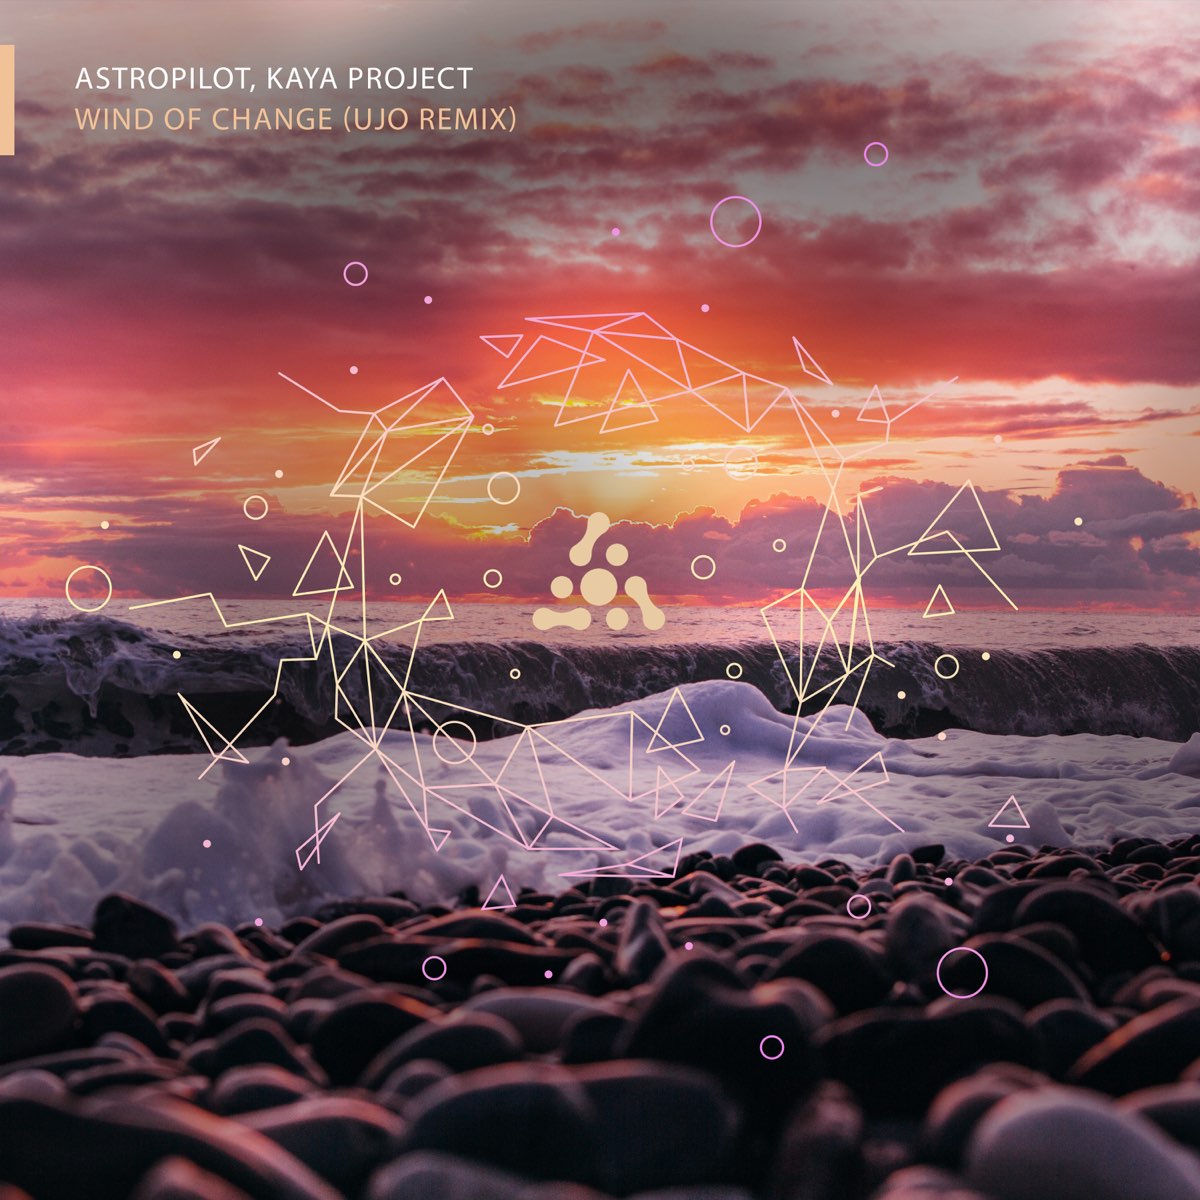 Словно ветер ремикс. Астропилот. Kaya Project альбомы. Winds of change. ASTROPILOT Pineland album.